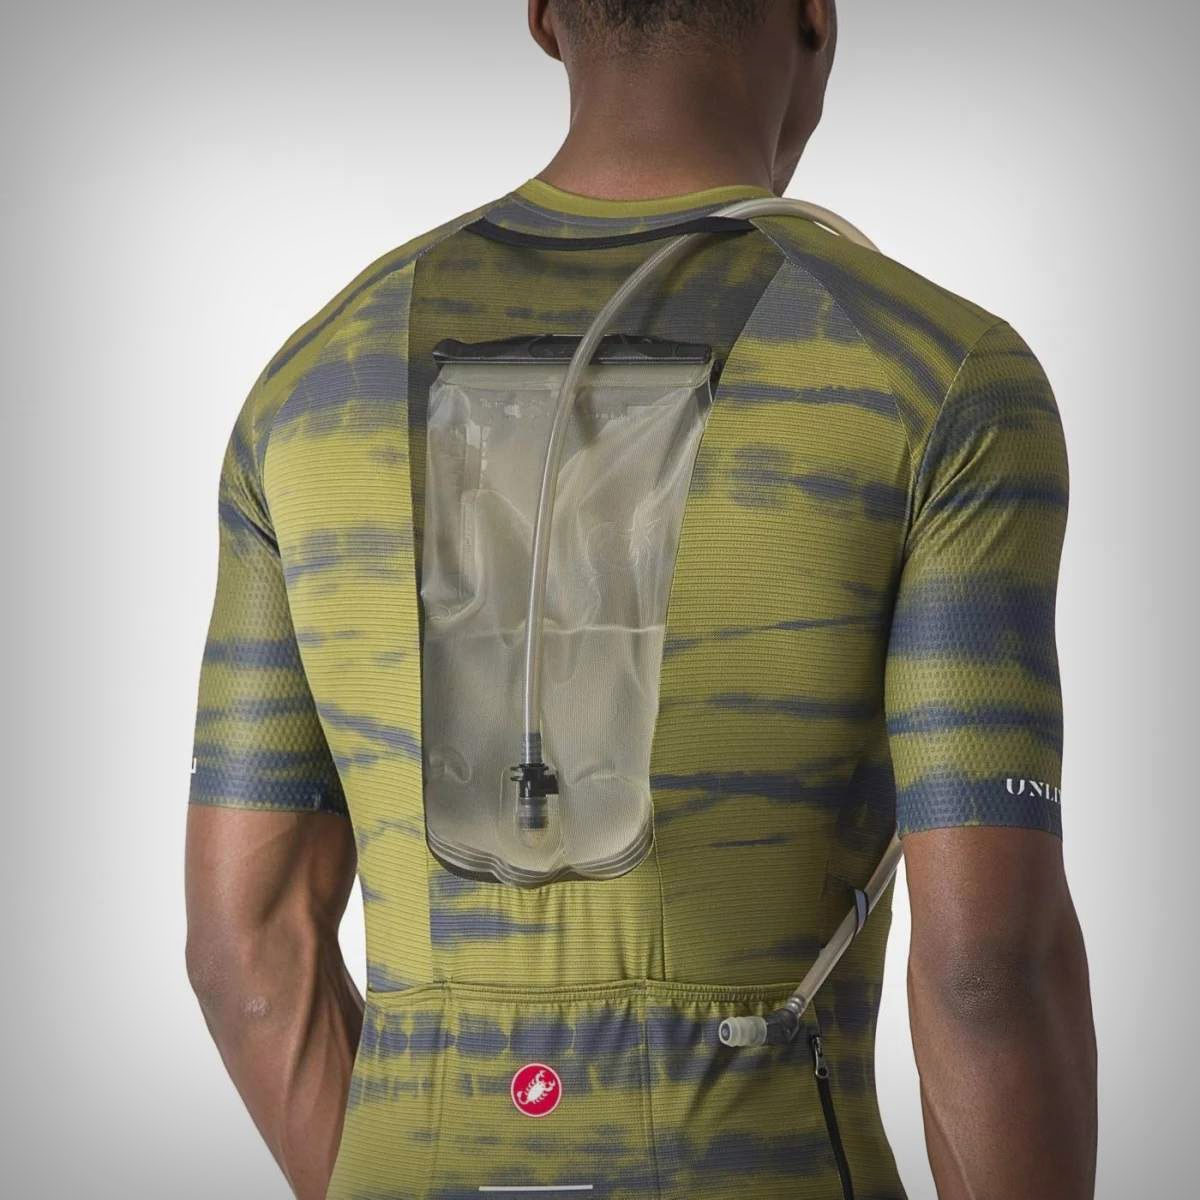 Castelli Unlimited Pro, un maillot enfocado al gravel con depósito para bolsa de hidratación integrado